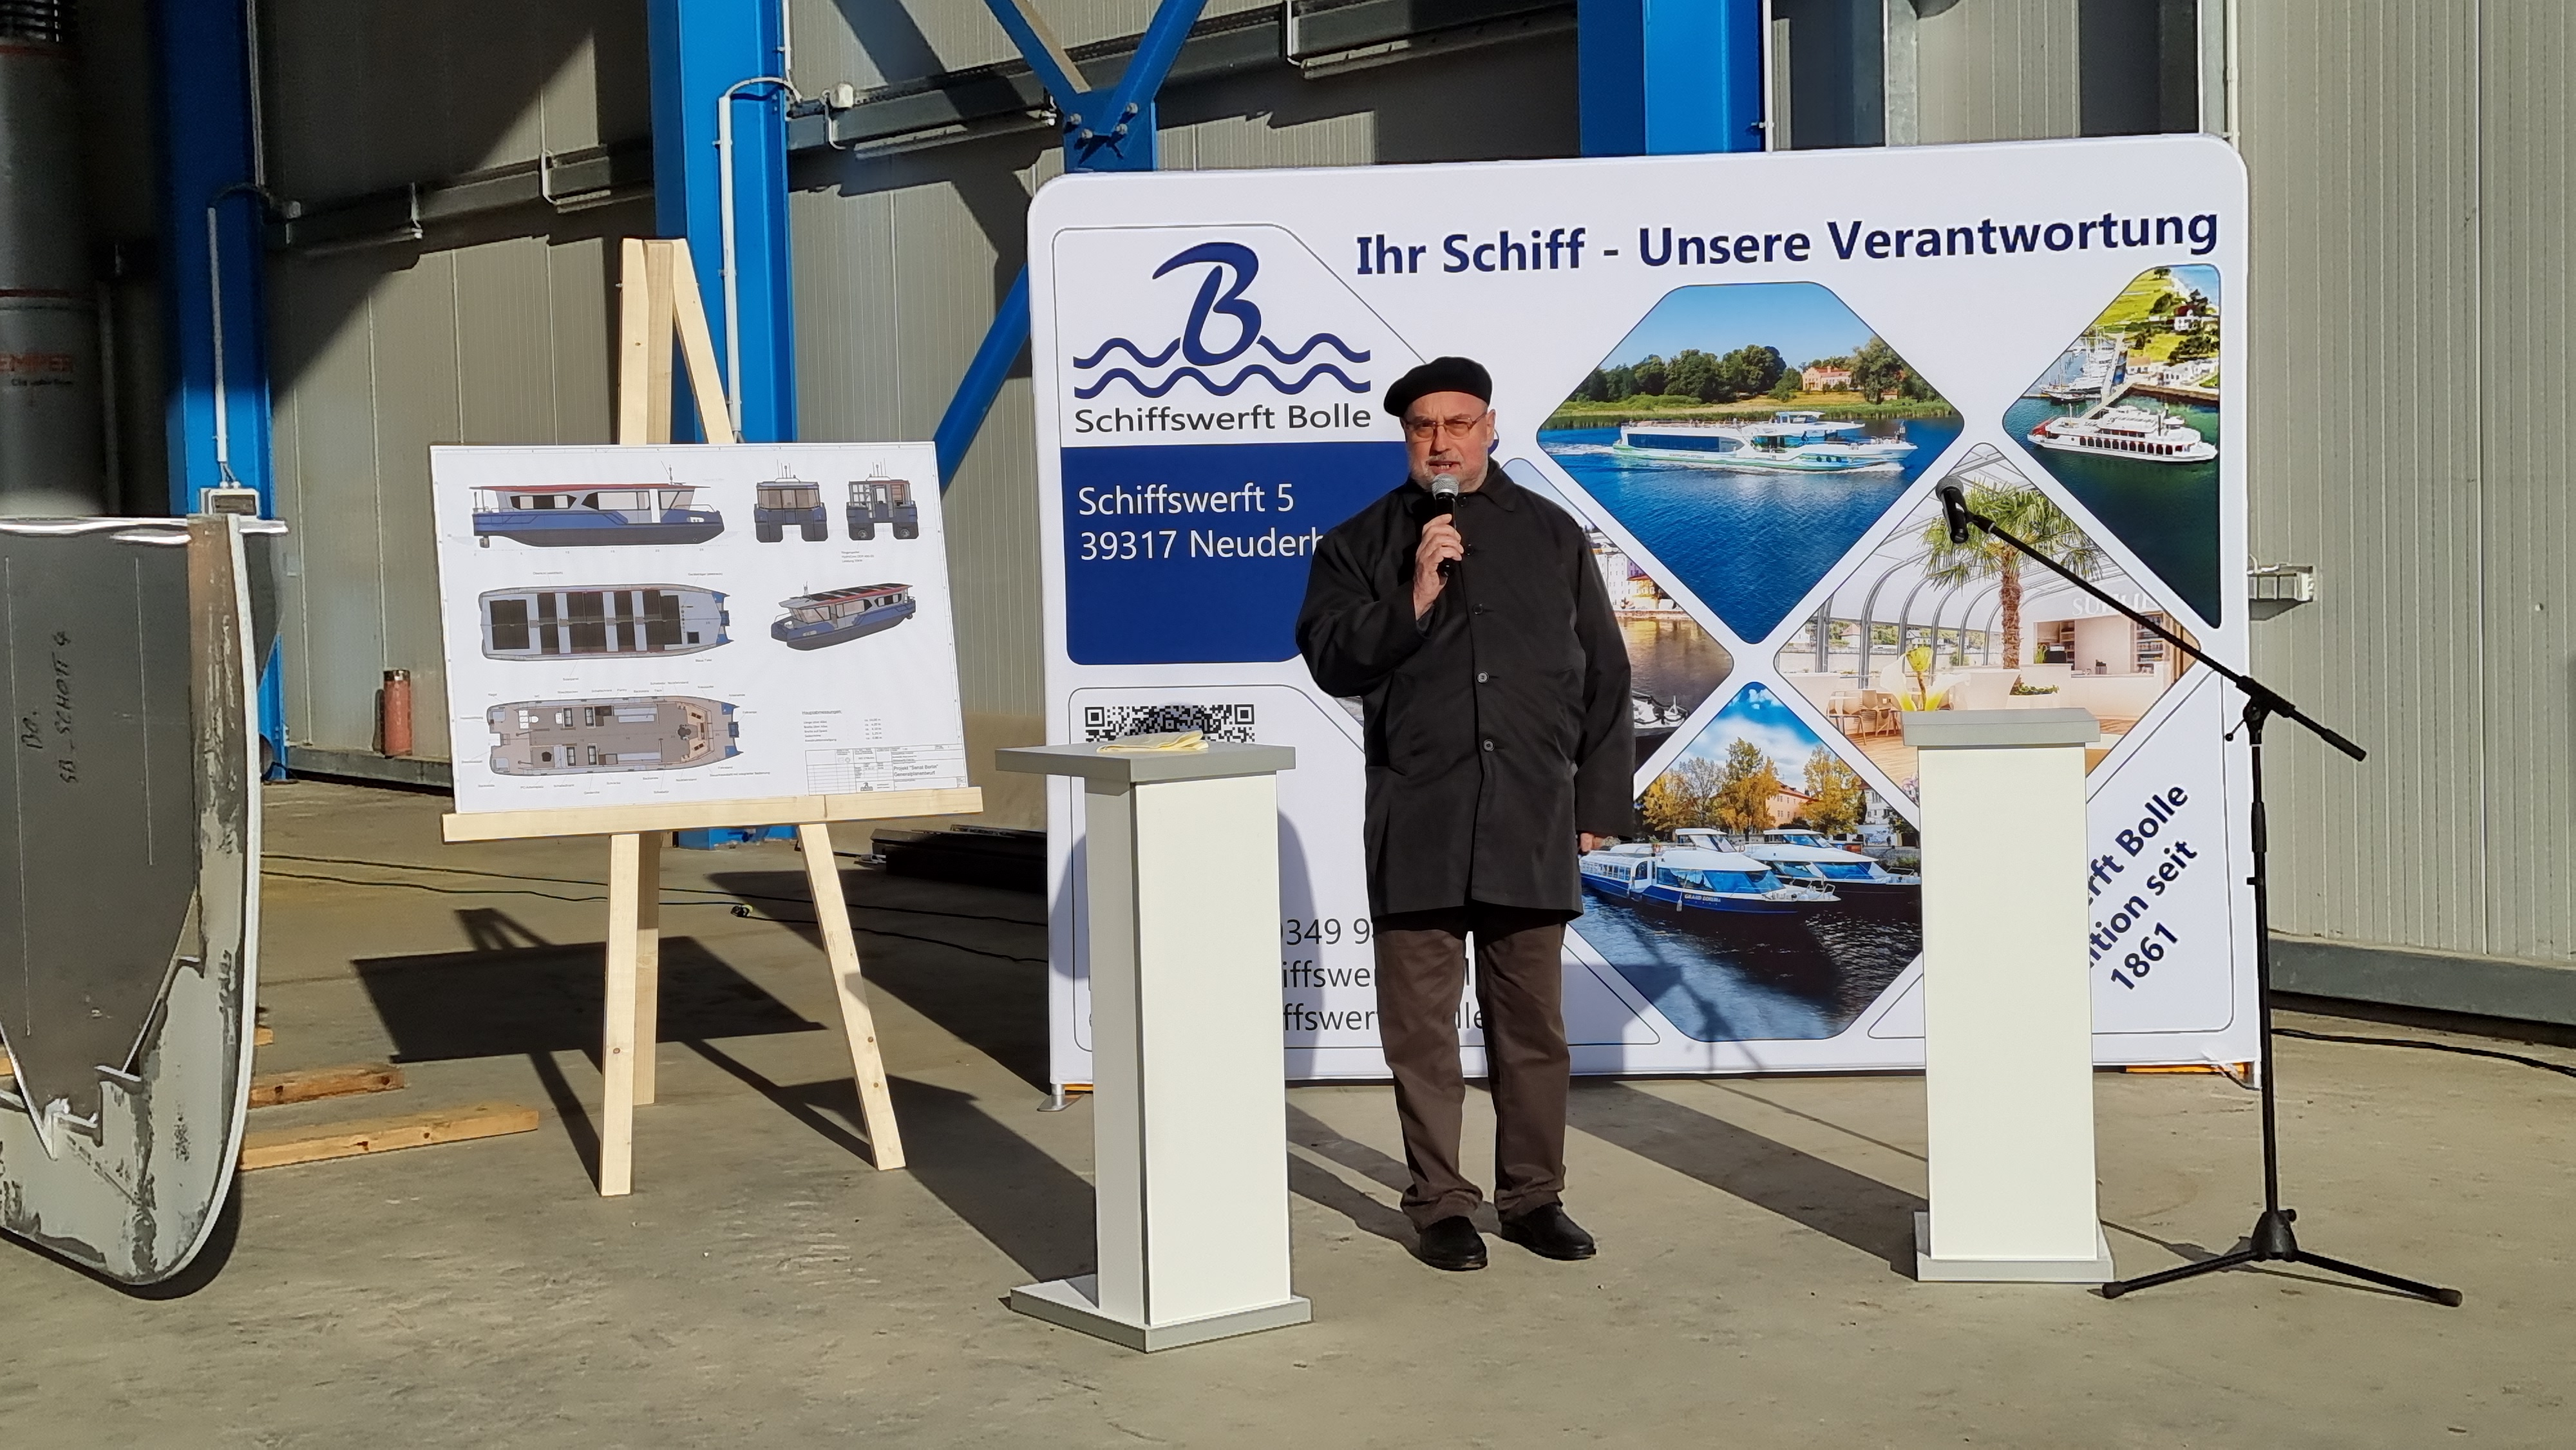 10.11.2021 - Bau eines neuen solar-elektrisch betriebenen Schiffes  - Pfarrer Breit segnete das Schiff.